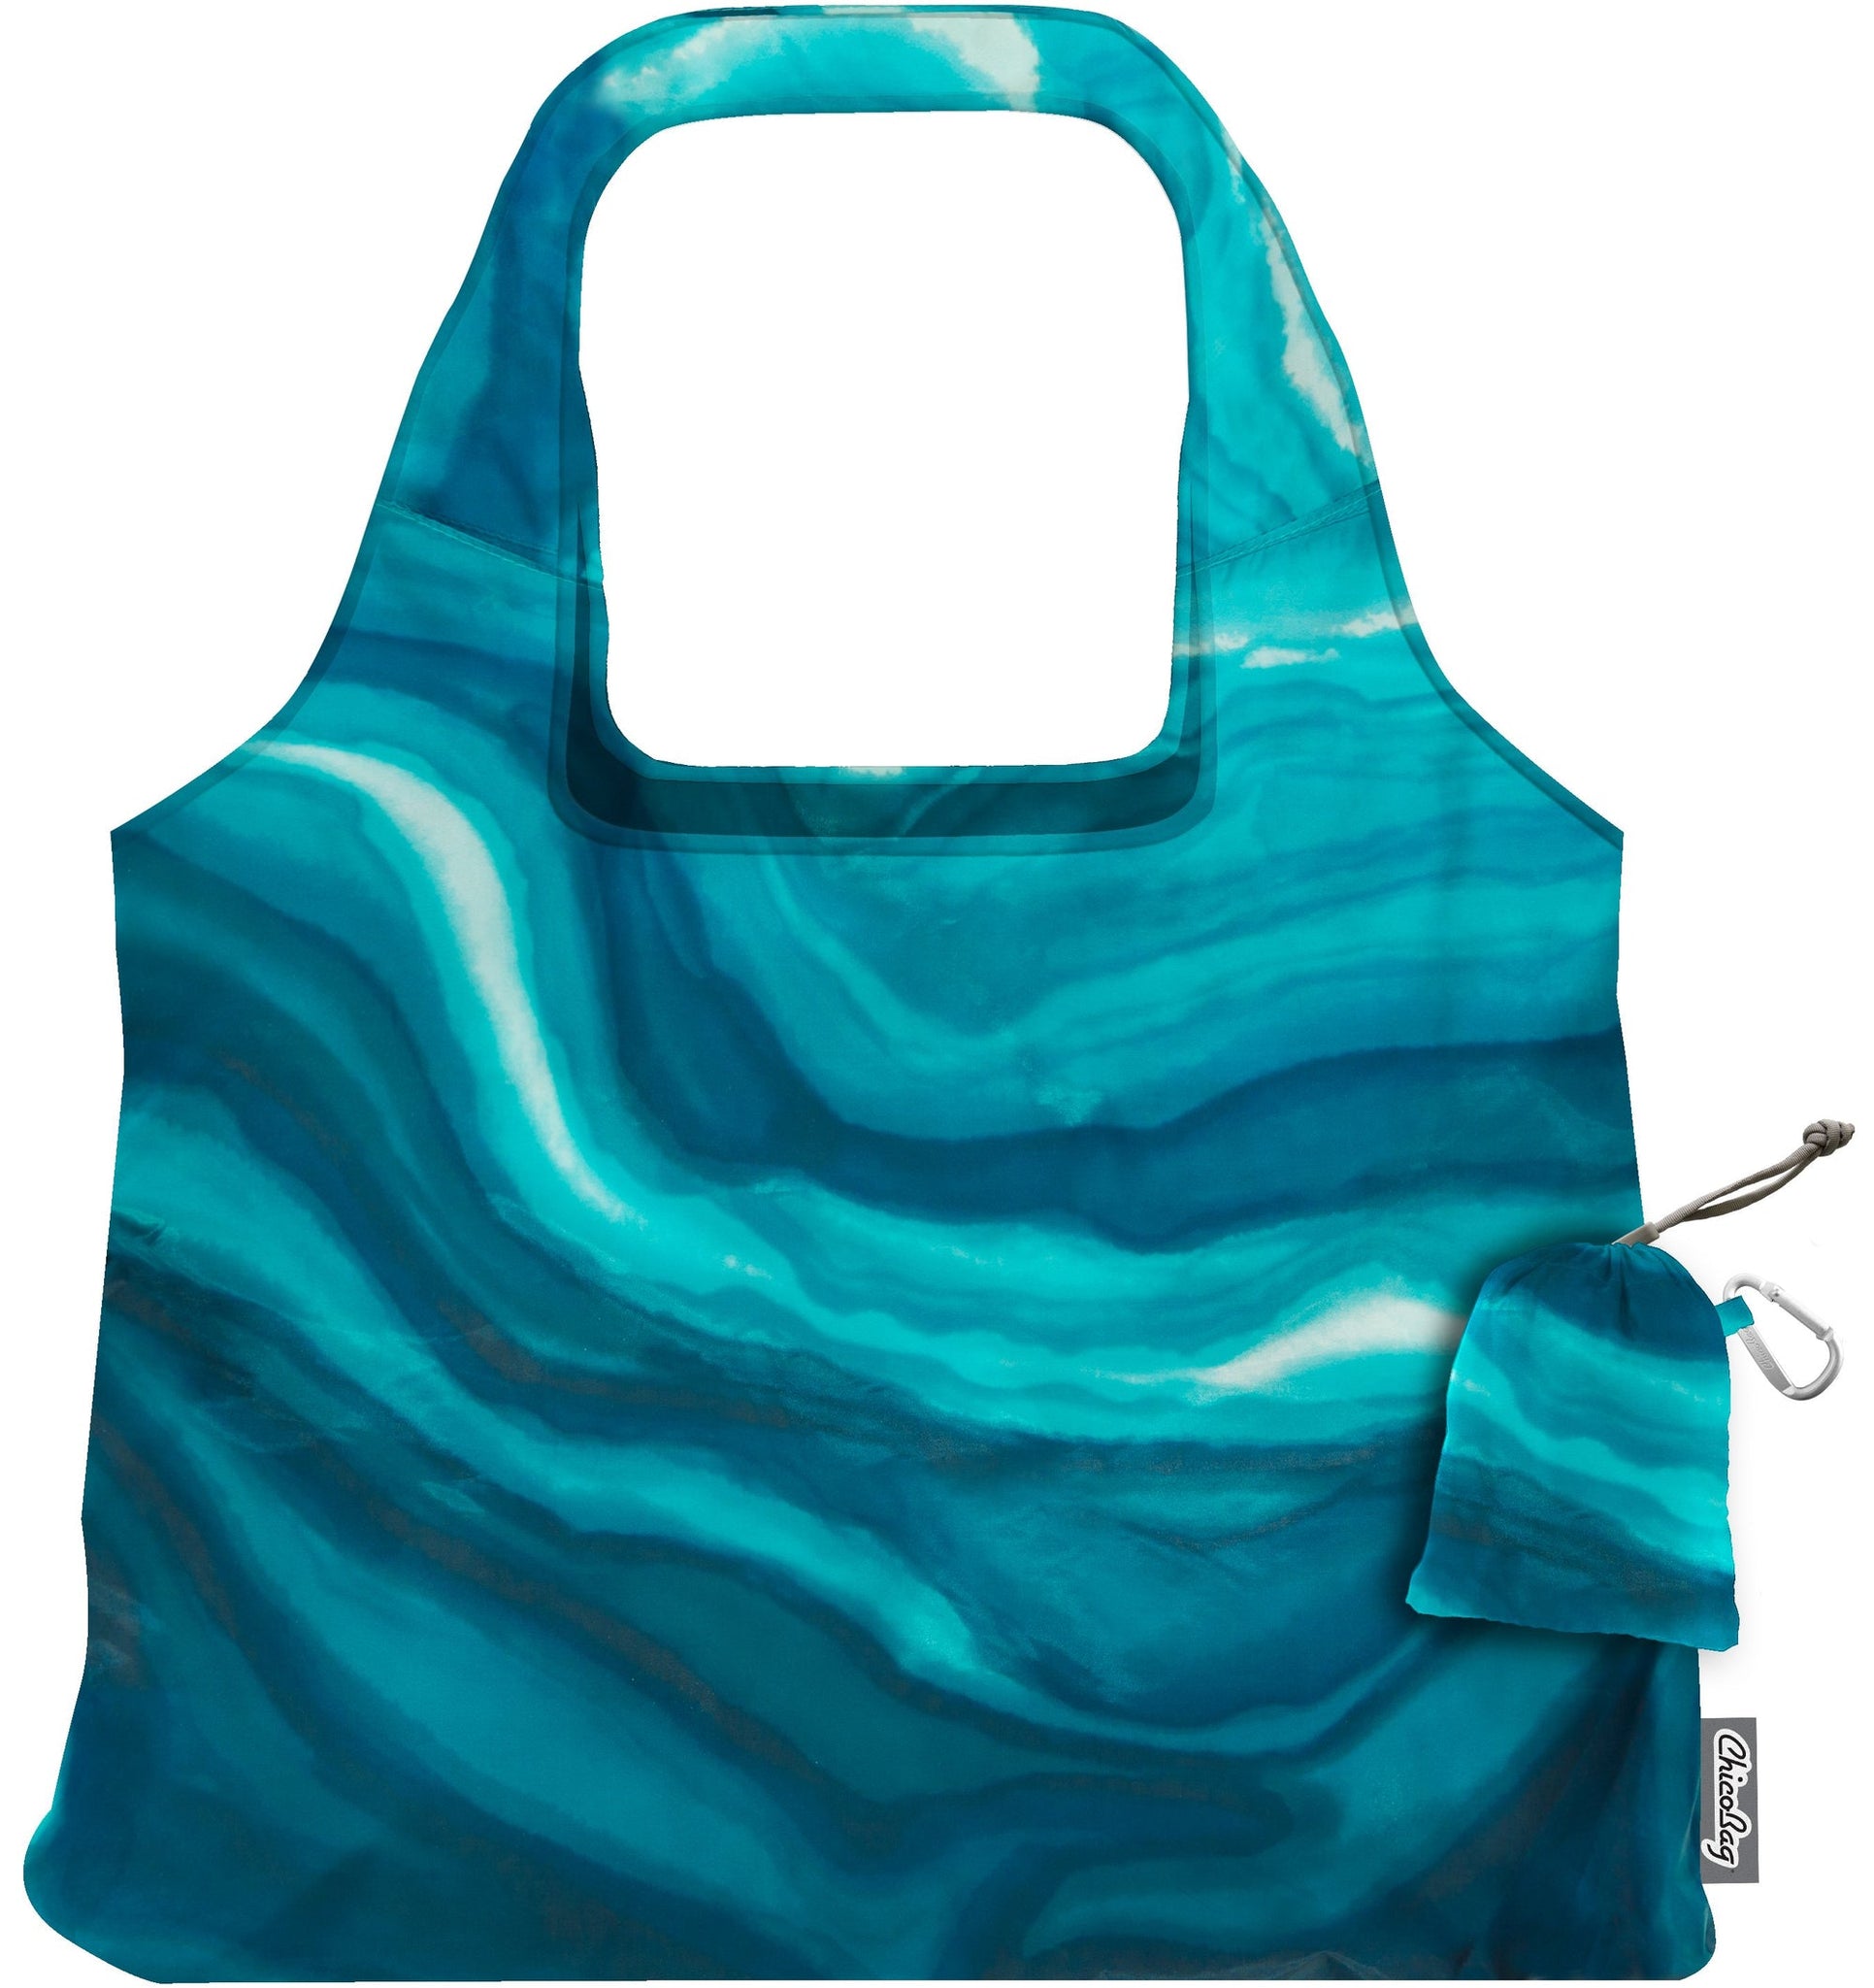 ChicoBag Original - Vita Designer Reusable Grocery Bag